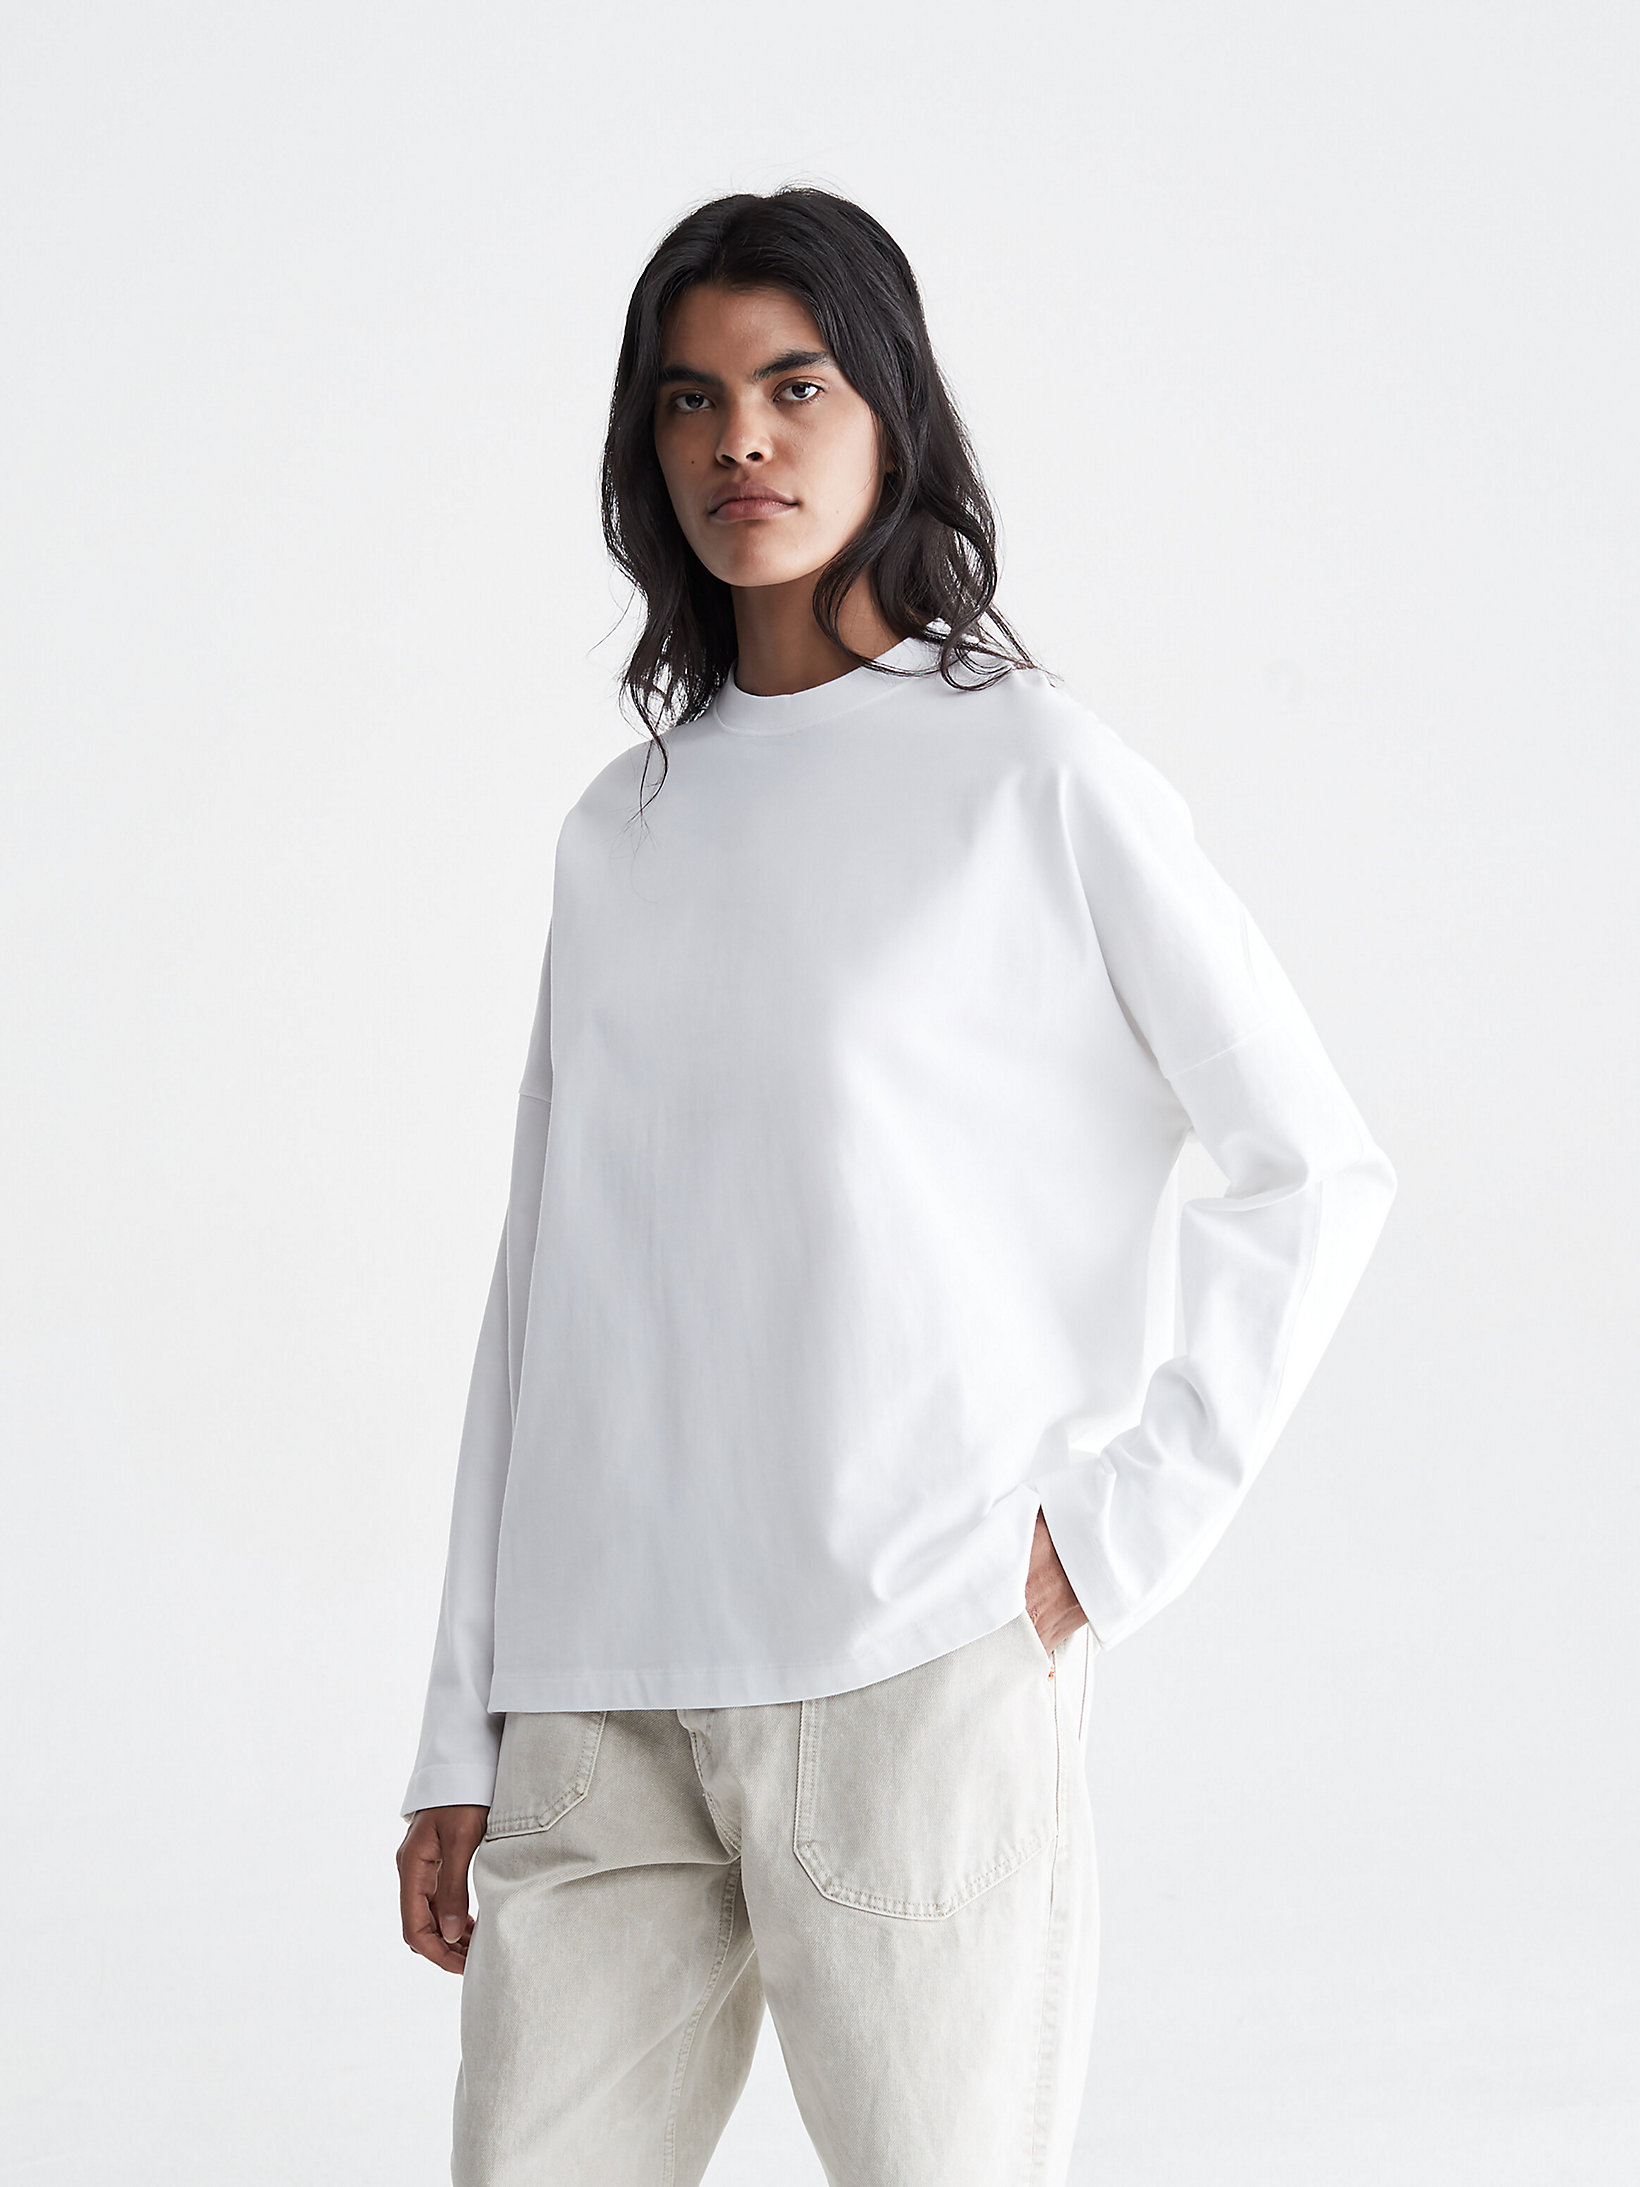 Brilliant White > Unisex-Langarmshirt Mit Print > undefined Unisex - Calvin Klein